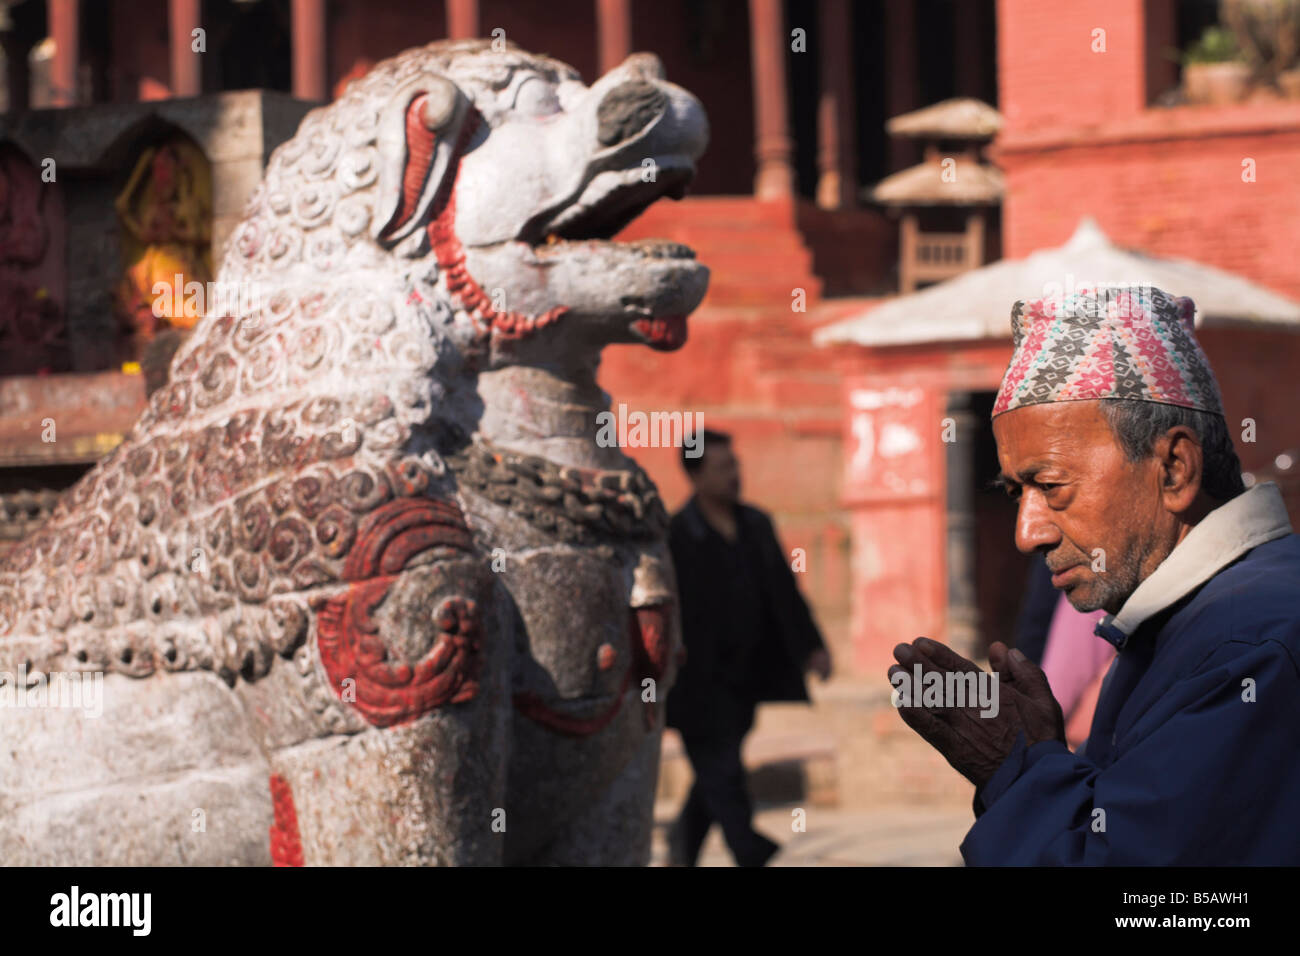 Man praying at the Chyasin Dega (Temple of Vansagopal) Hanuman-Dhoka Durbar Square, Kathmandu, Nepal Stock Photo